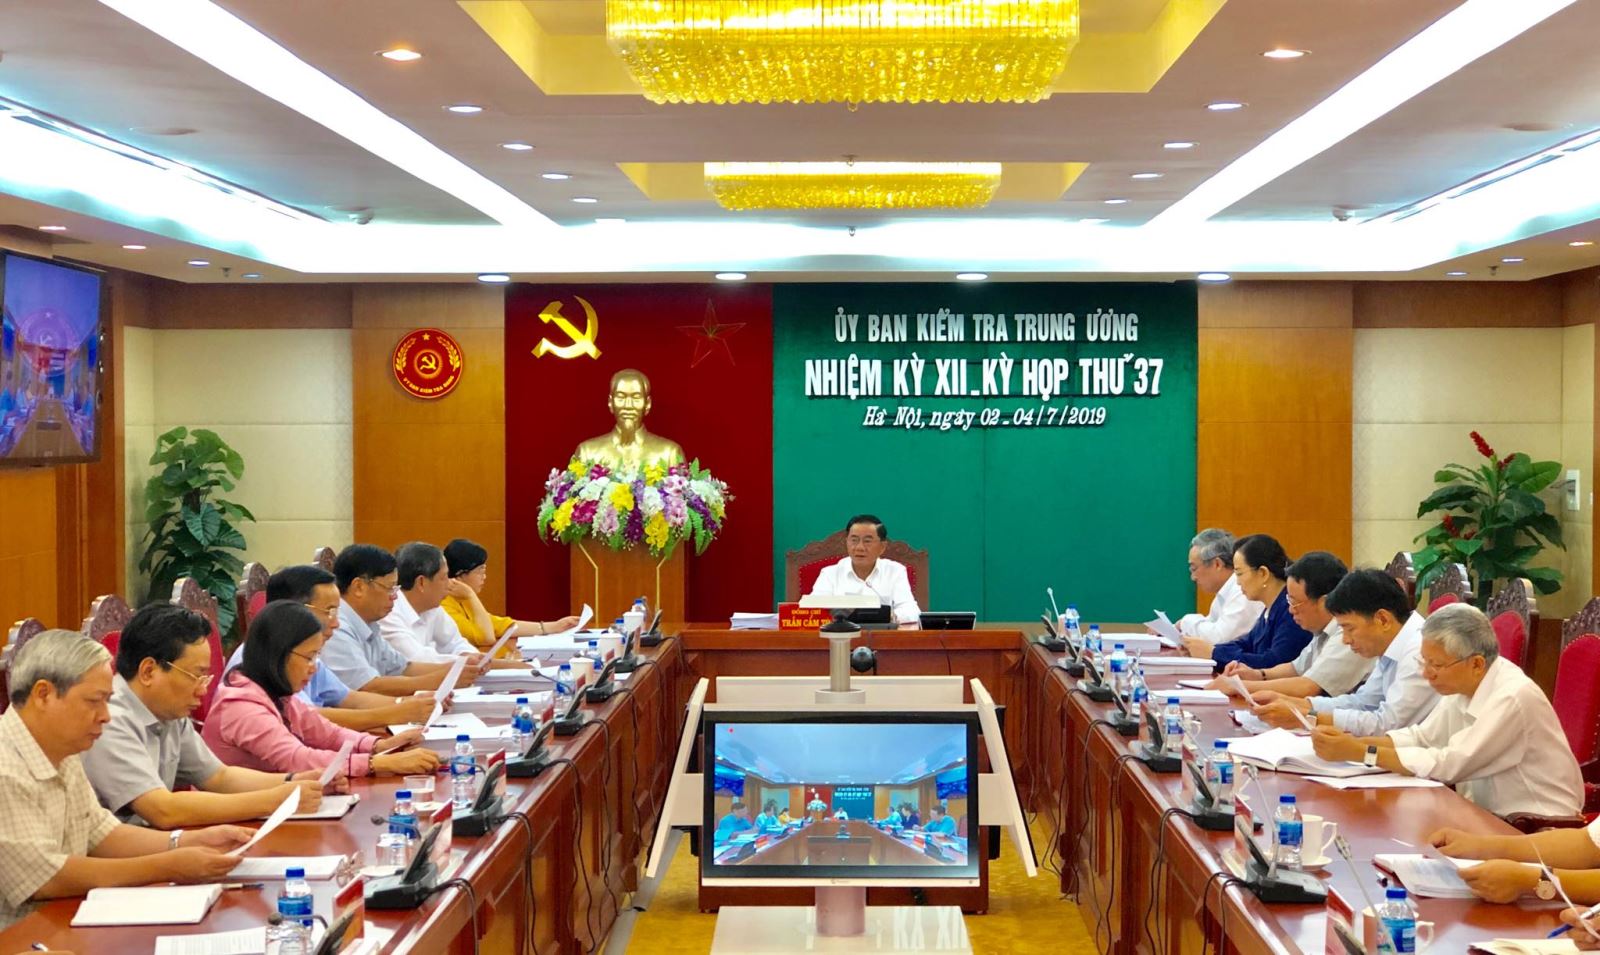 Đồng chí Trần Cẩm Tú, Bí thư Trung ương Đảng, Chủ nhiệm Ủy ban Kiểm tra Trung ương chủ trì kỳ họp thứ 37